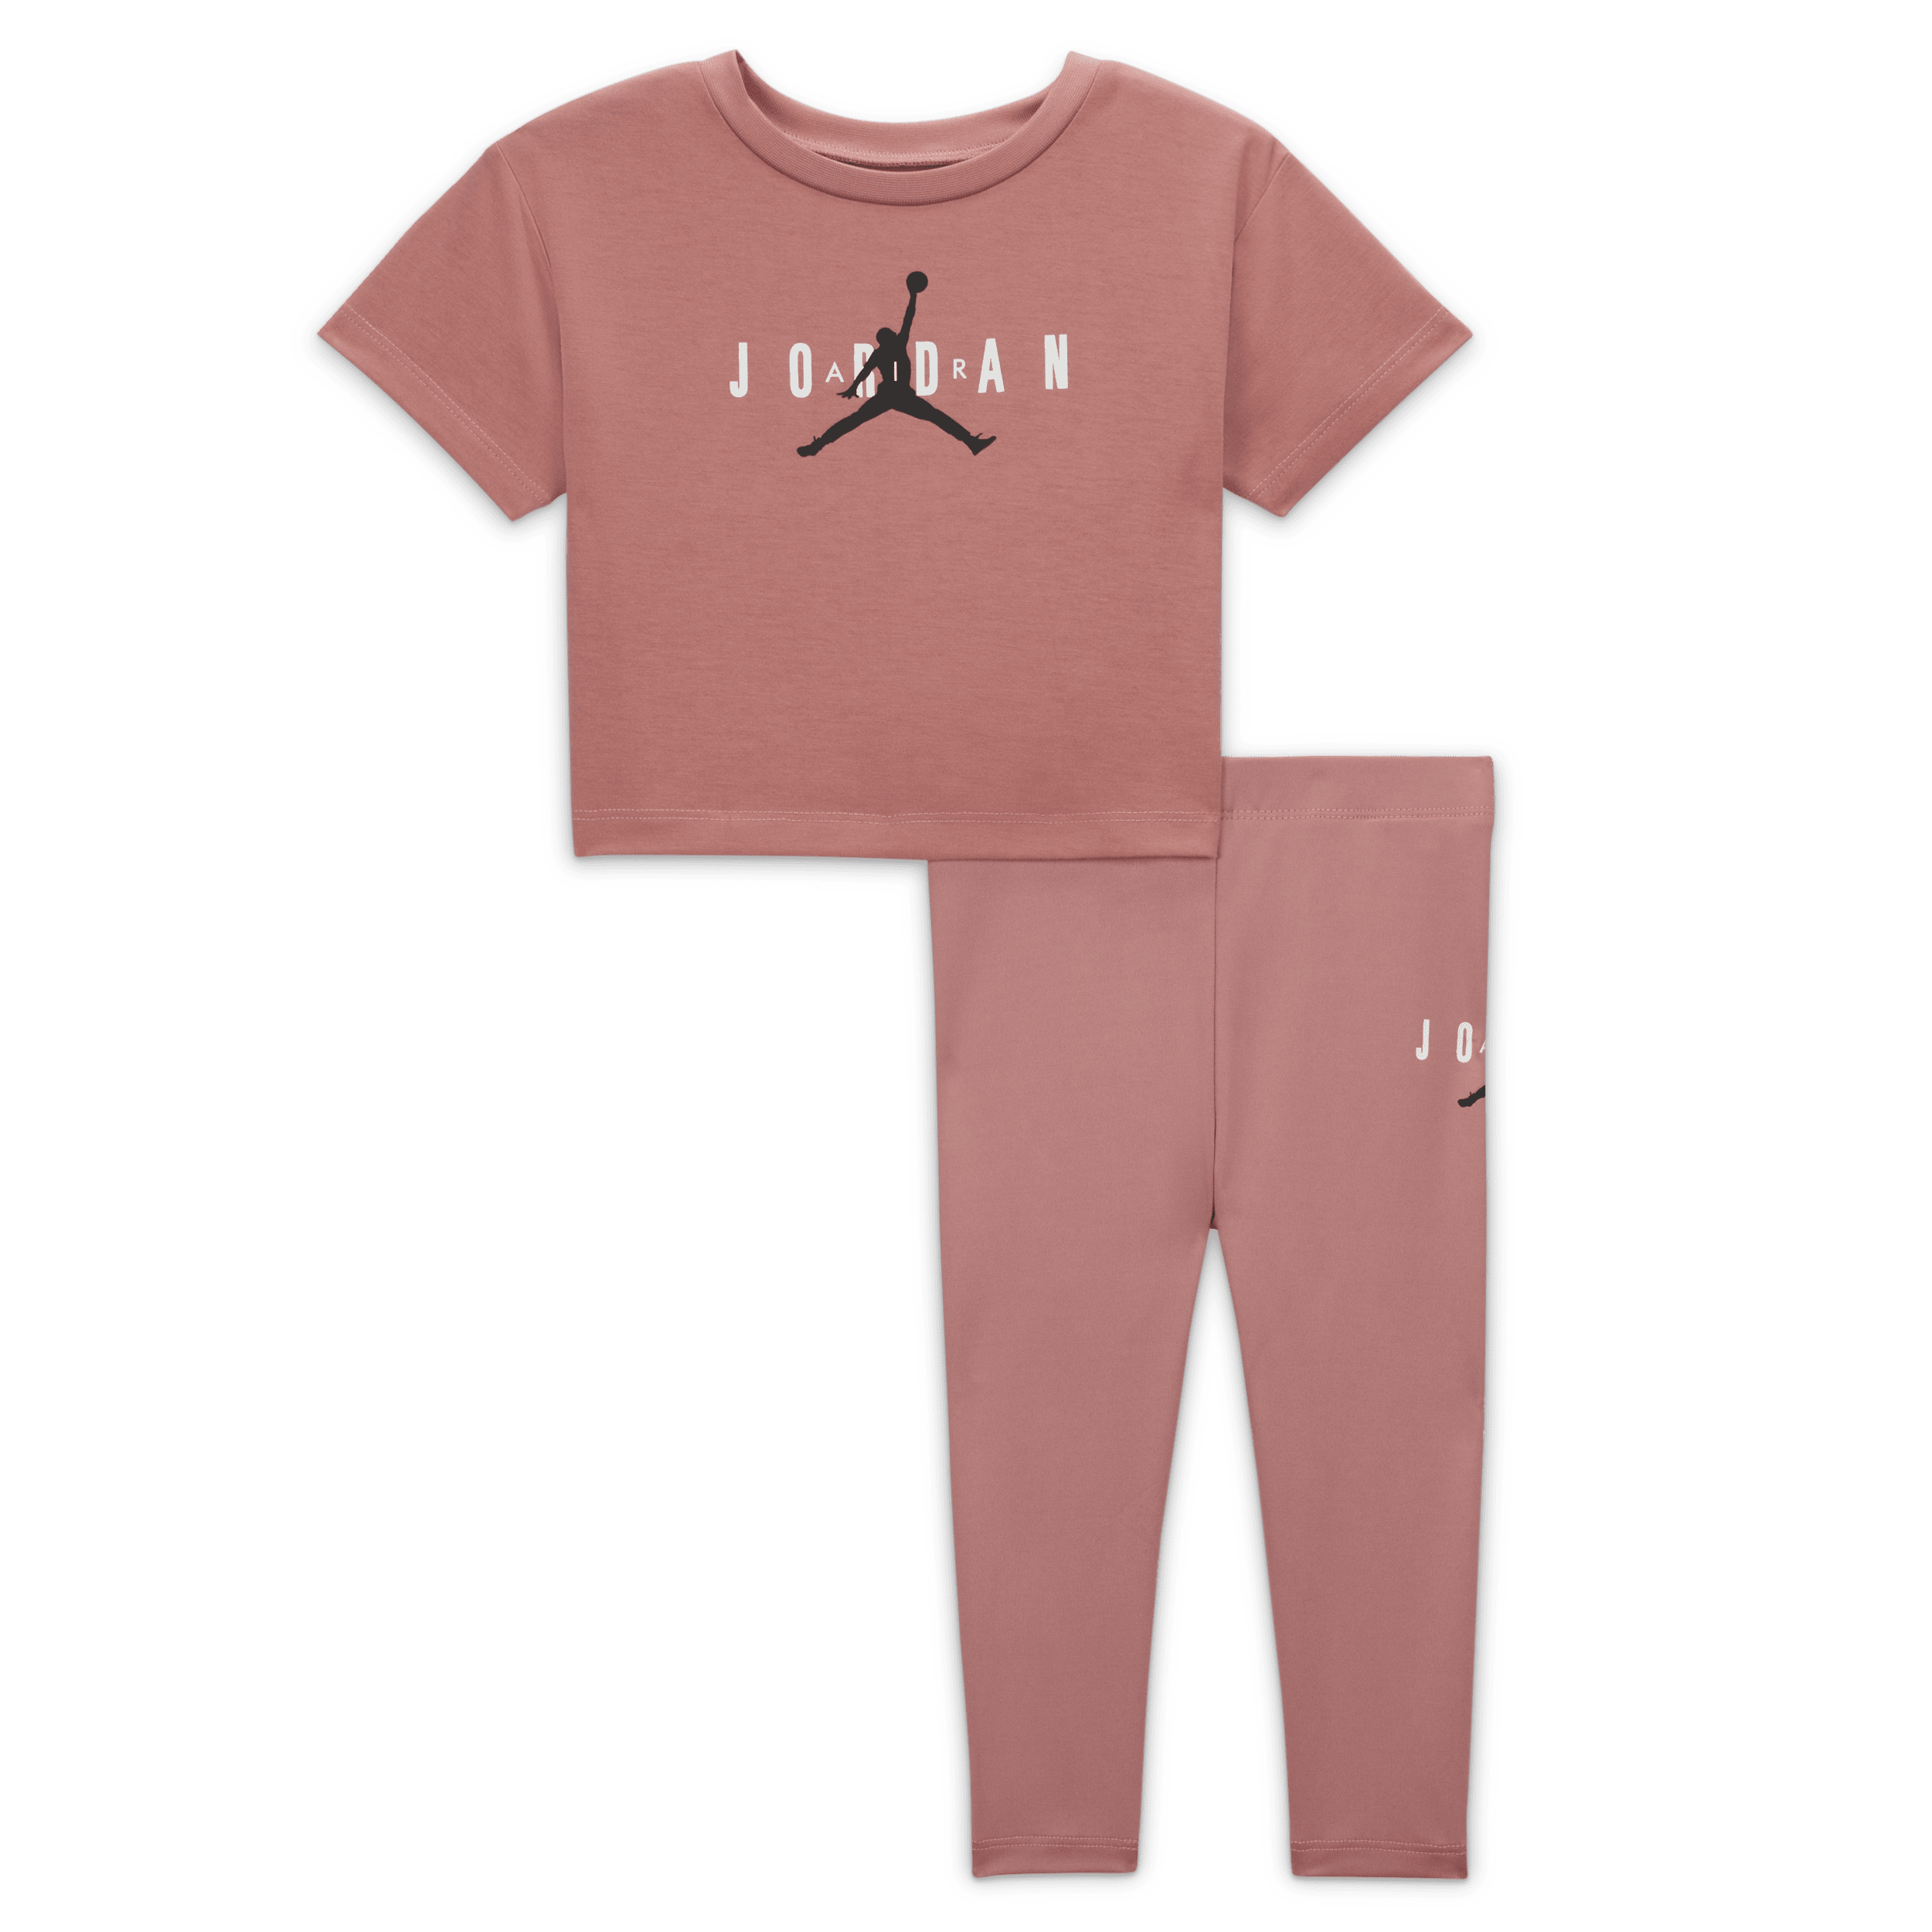 Jordan Conjunto de leggings con materiales sostenibles - Bebé (12-24 M) - Rosa